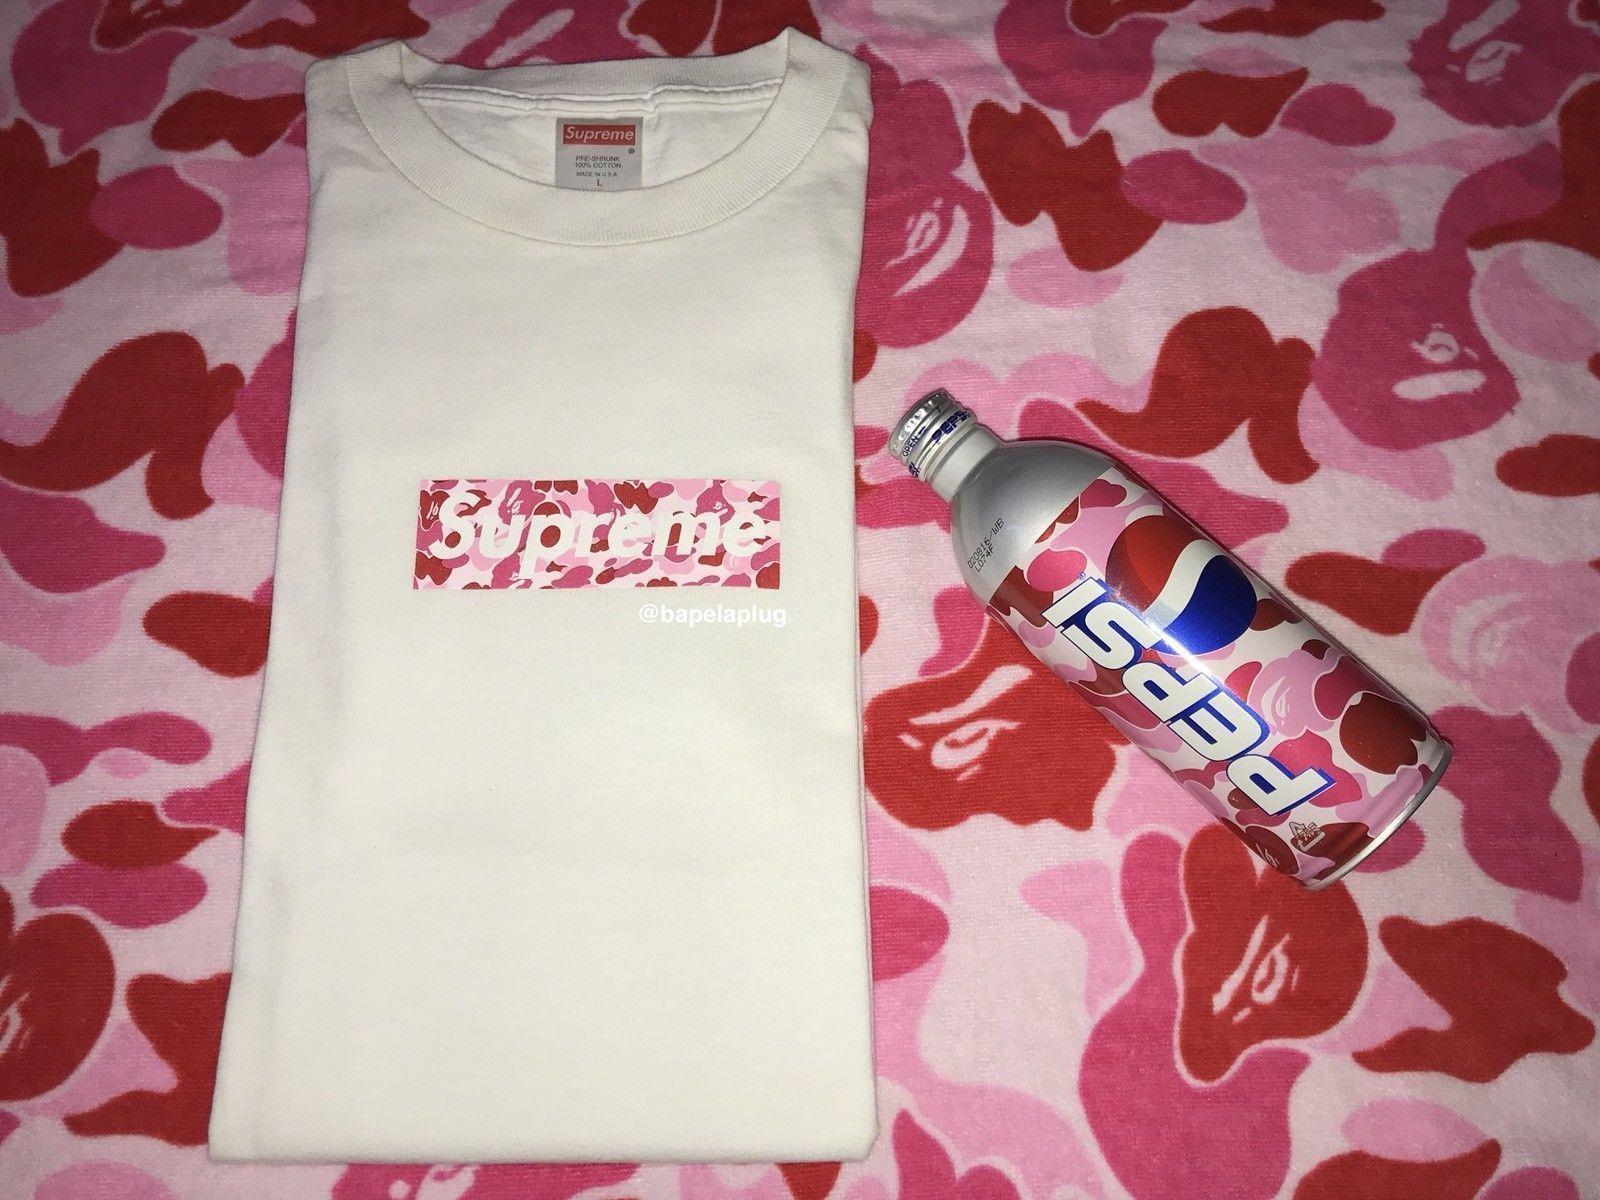 Supreme X BAPE Logo - Details About SUPREME X BAPE Pink ABC Camo Box Logo T Shirt WHITE L